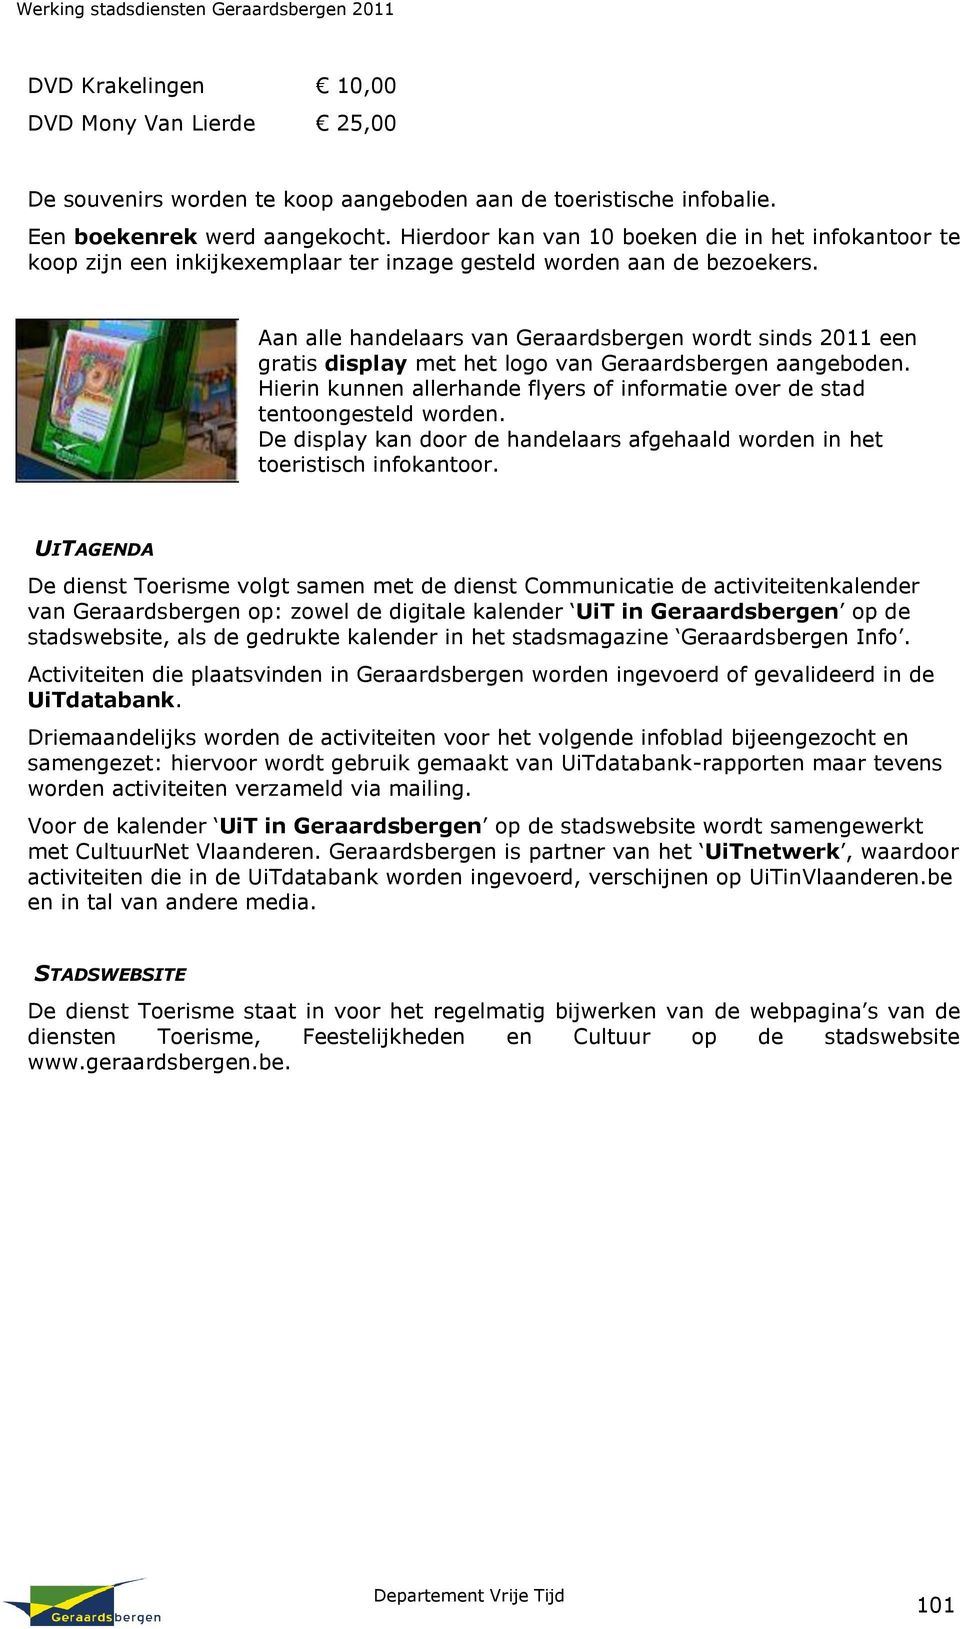 Aan alle handelaars van Geraardsbergen wordt sinds 2011 een gratis display met het logo van Geraardsbergen aangeboden. Hierin kunnen allerhande flyers of informatie over de stad tentoongesteld worden.